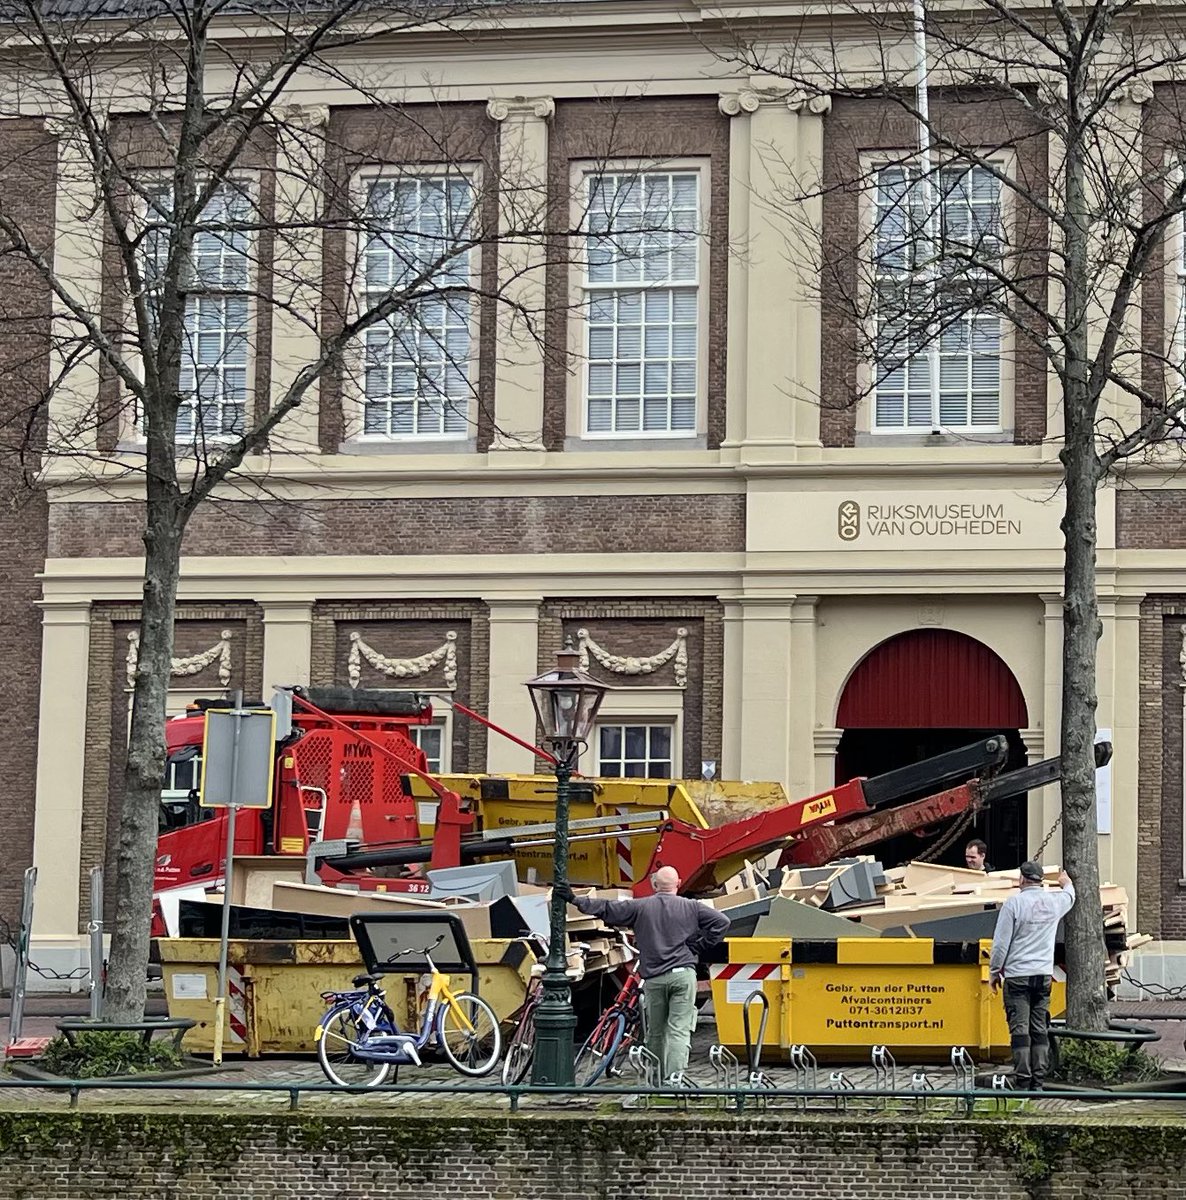 Zo hard wordt er gewerkt in het @RM_Oudheden in Leiden! Vorige week werden de restanten van Het jaar 1000 afgevoerd. (De tentoonstelling trok 111.000 bezoekers!) En nu 👇 al de opbouw van twee nieuwe tentoonstellingen: Romeinse villa’s in Limburg en Paestum - Stad van godinnen!